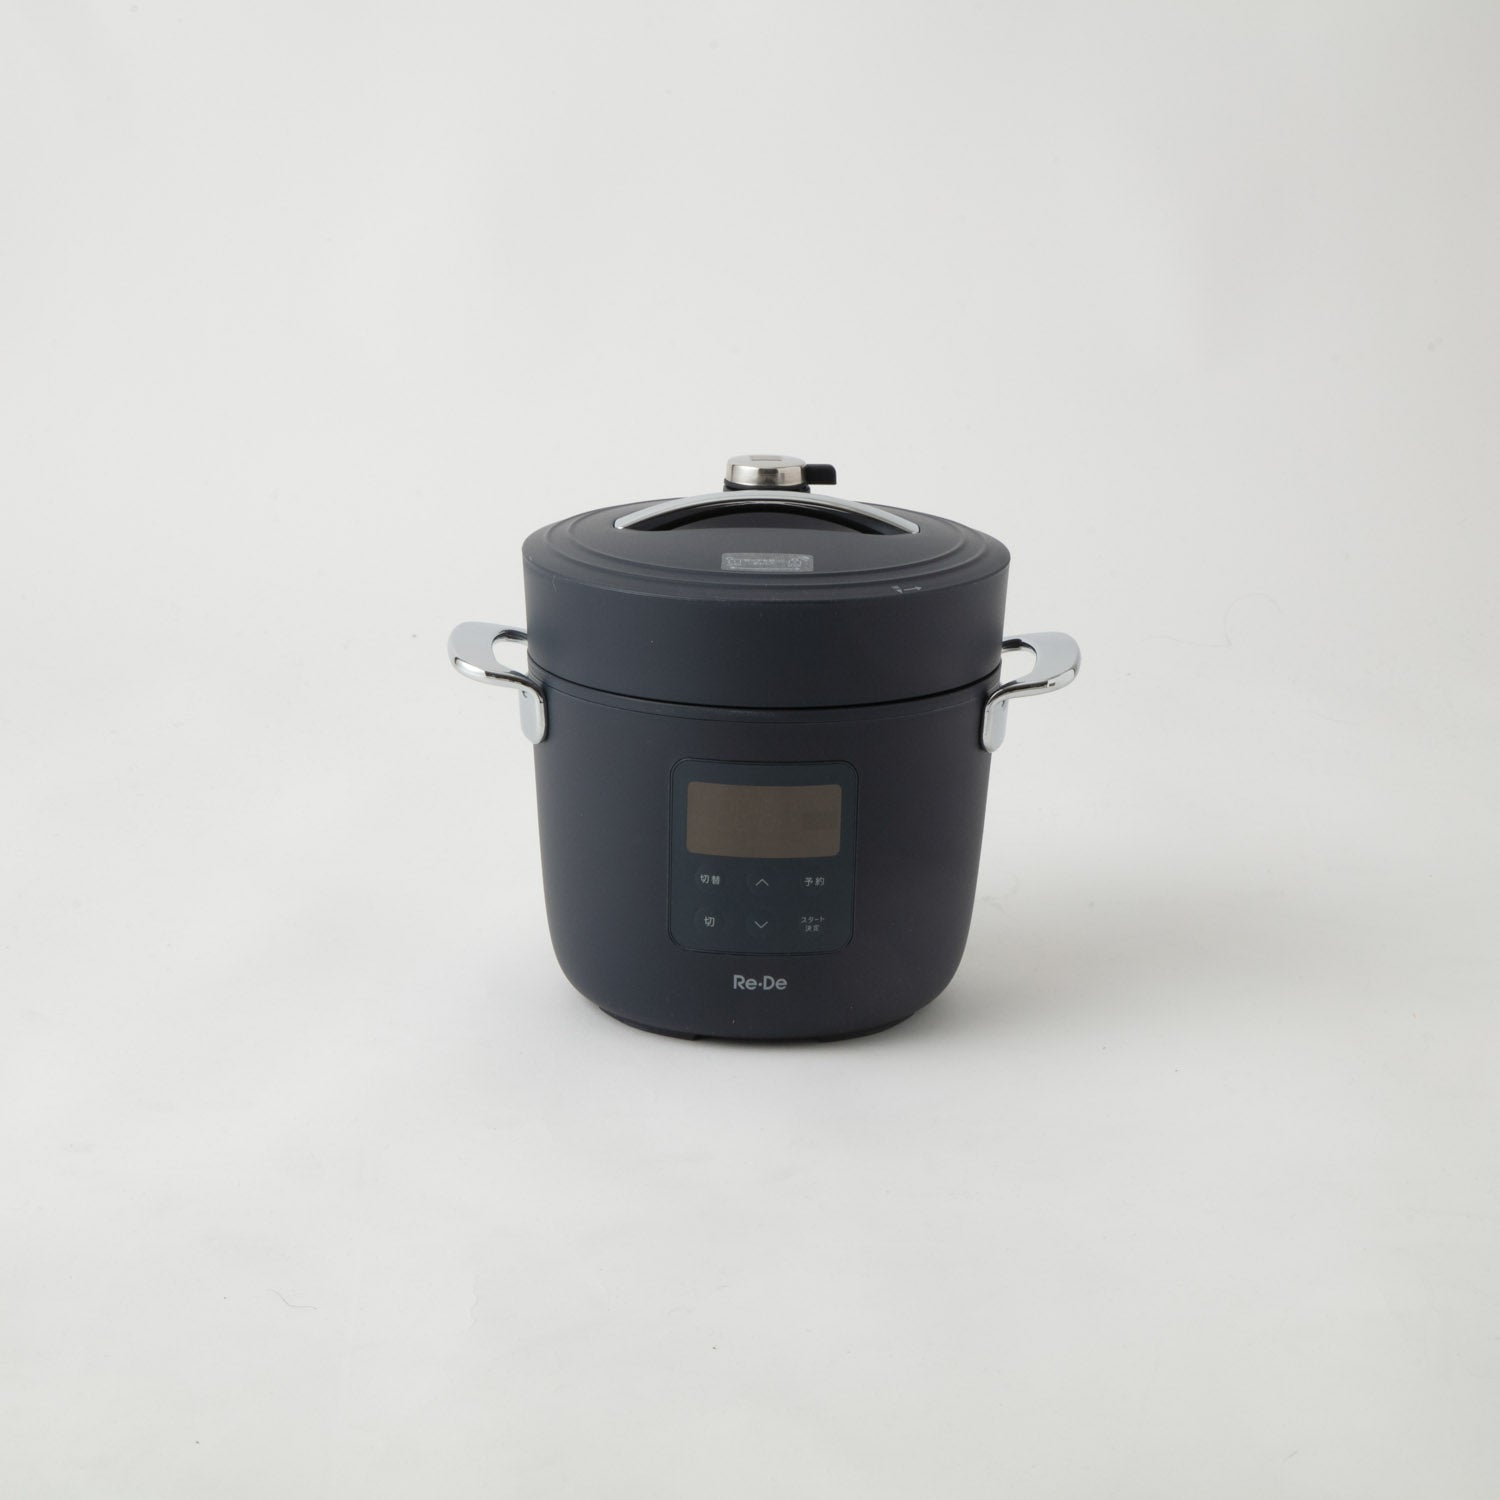 スマホ/家電/カメラRe・De Pot 電気圧力鍋 ネイビー PCH-20LN 1回のみ使用